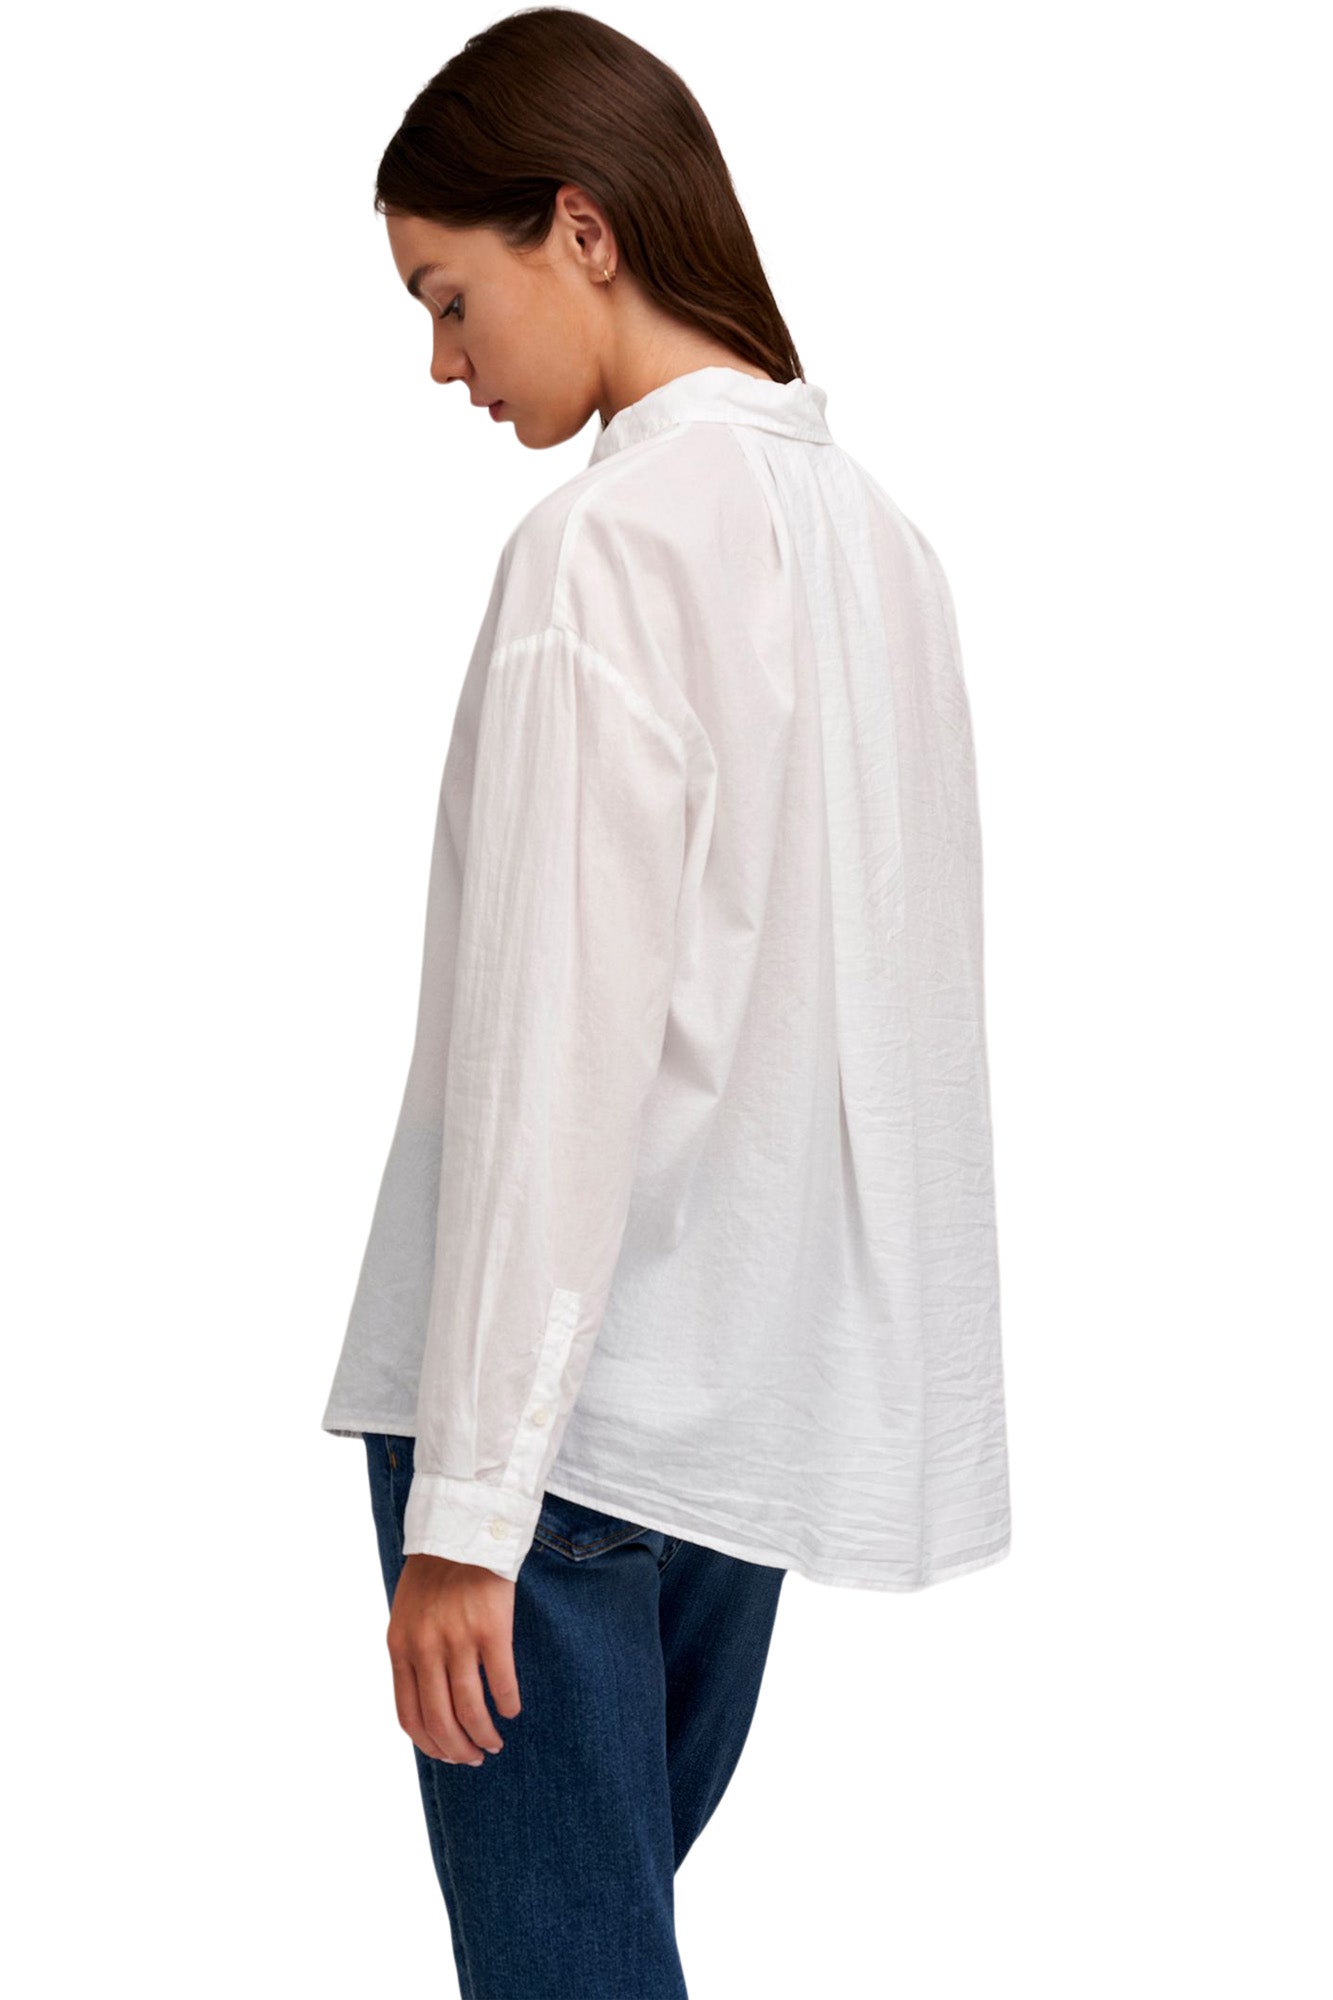 Velvet Devyn Button Up Shirt in White